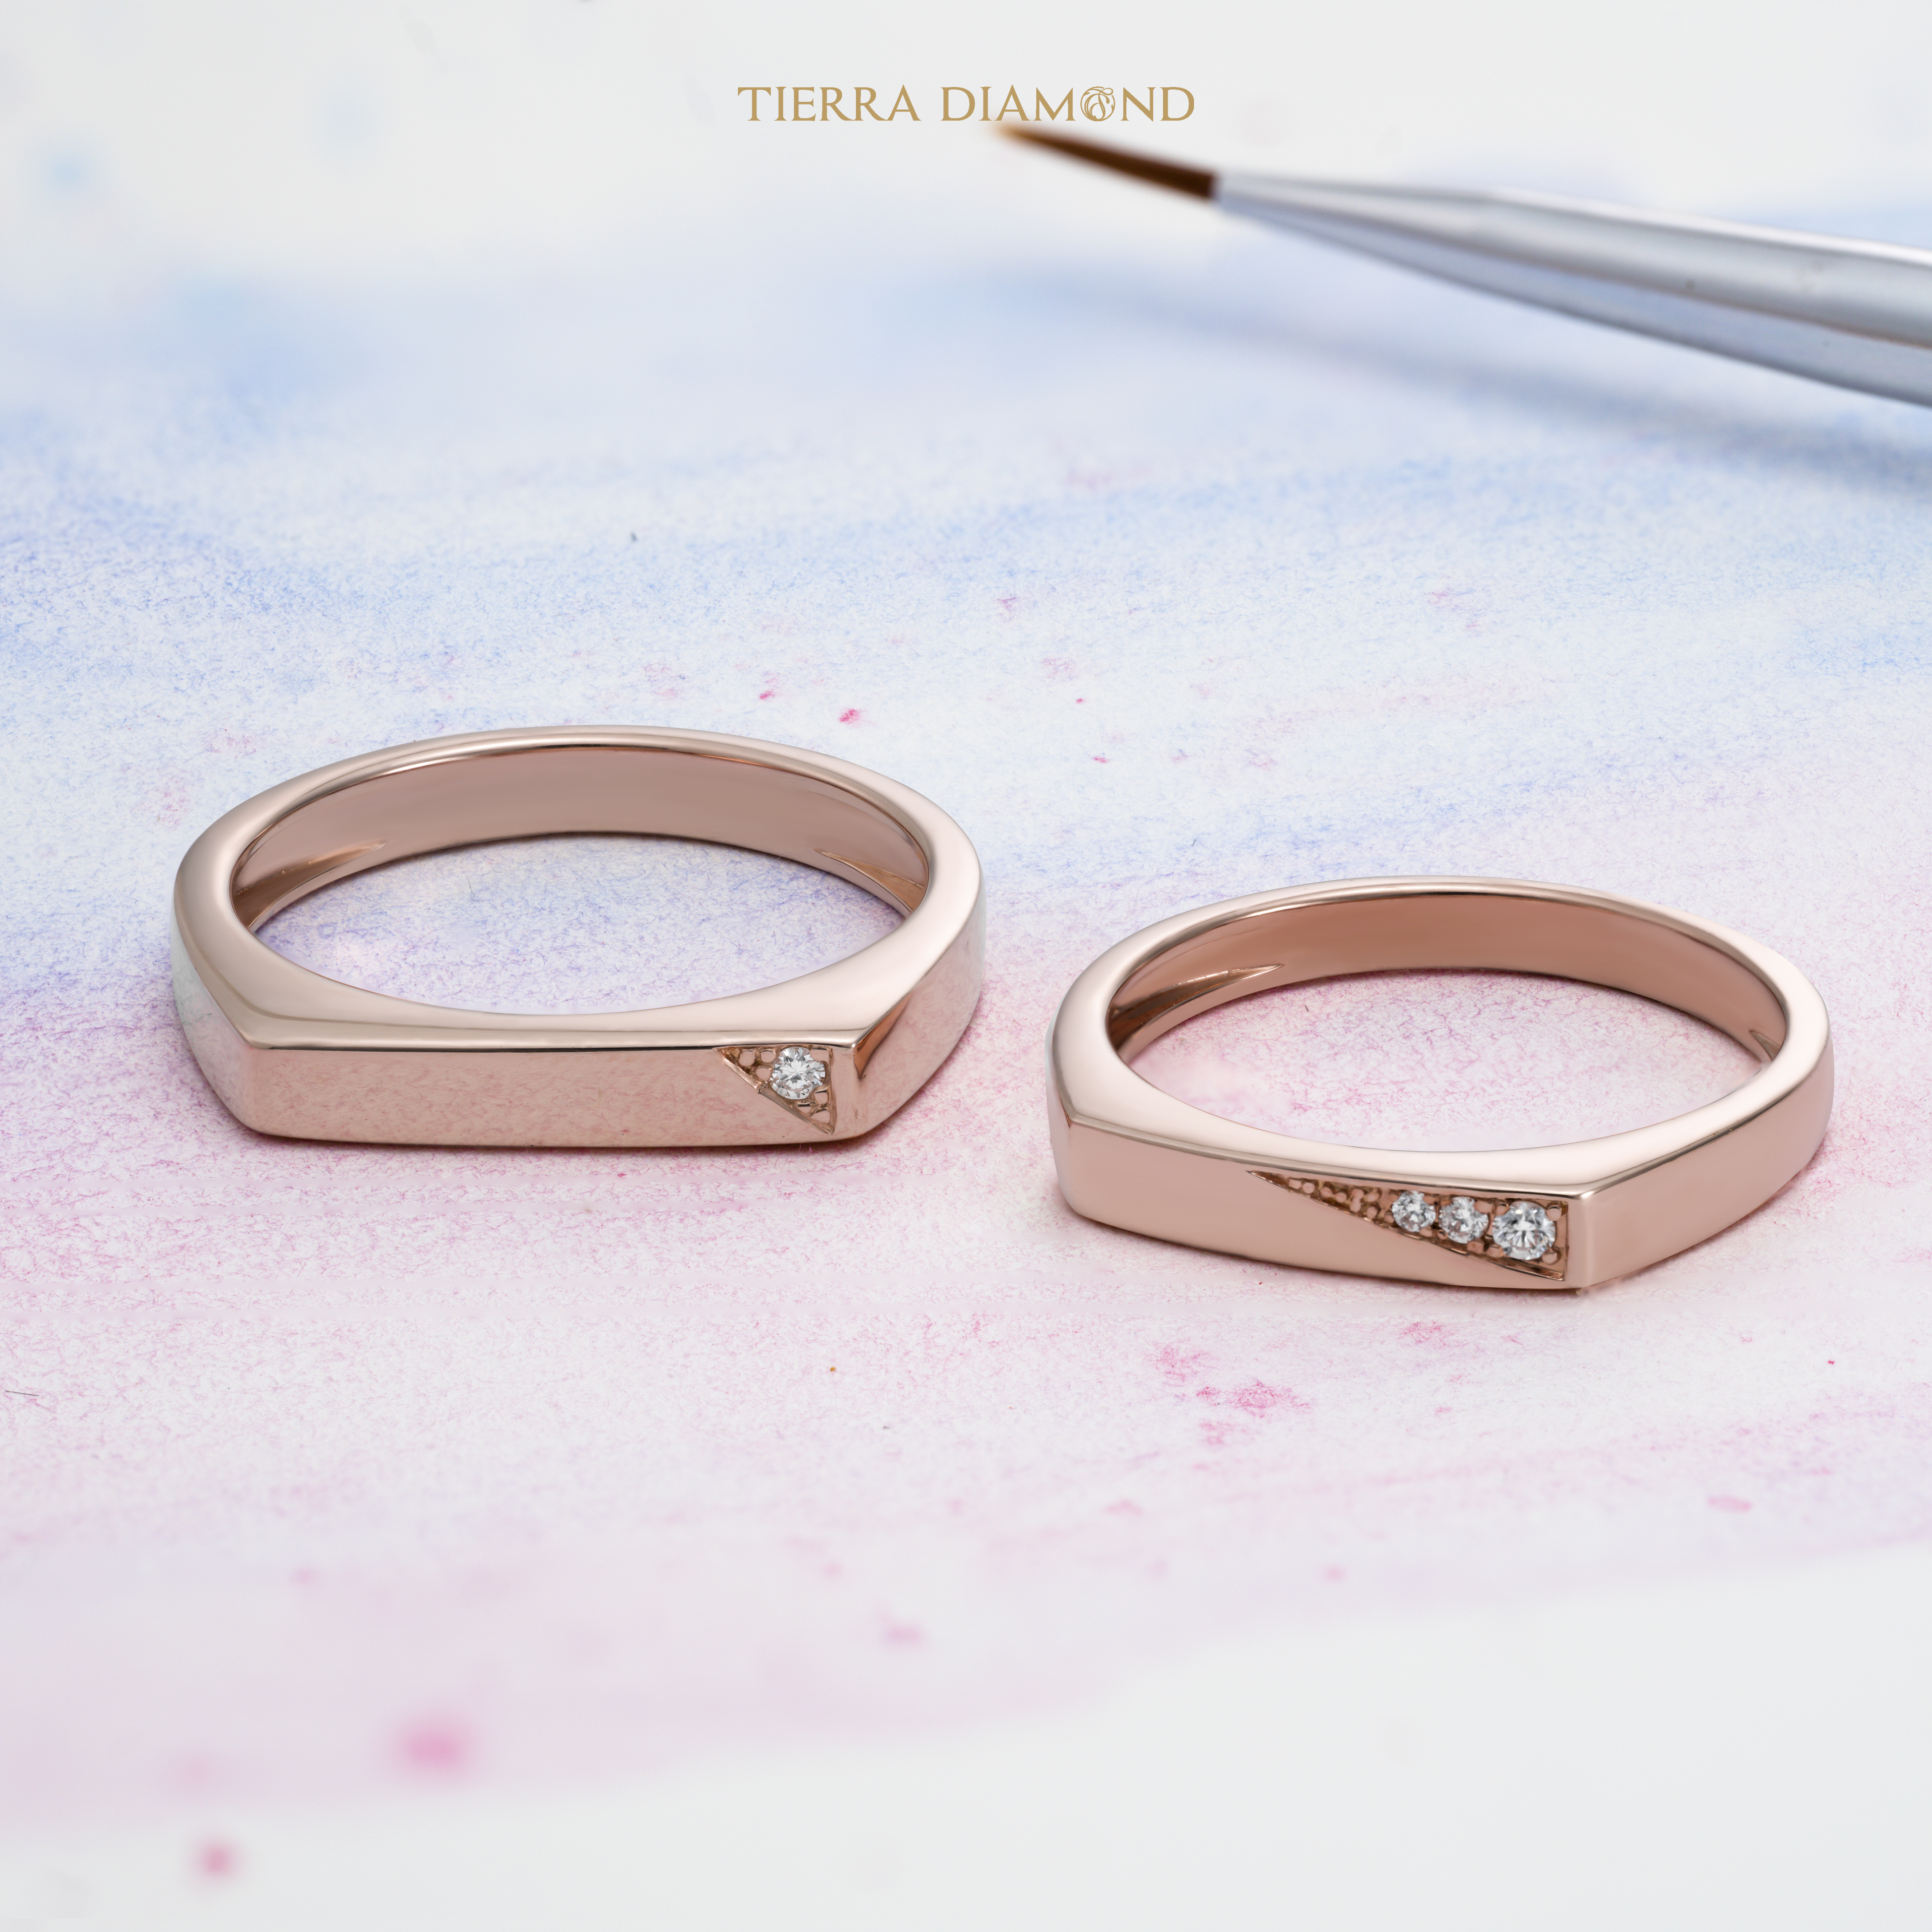 Những mẫu nhẫn cưới kim cương đẹp nhất - Giá chỉ từ 15 triệu đồng - 3.jpg